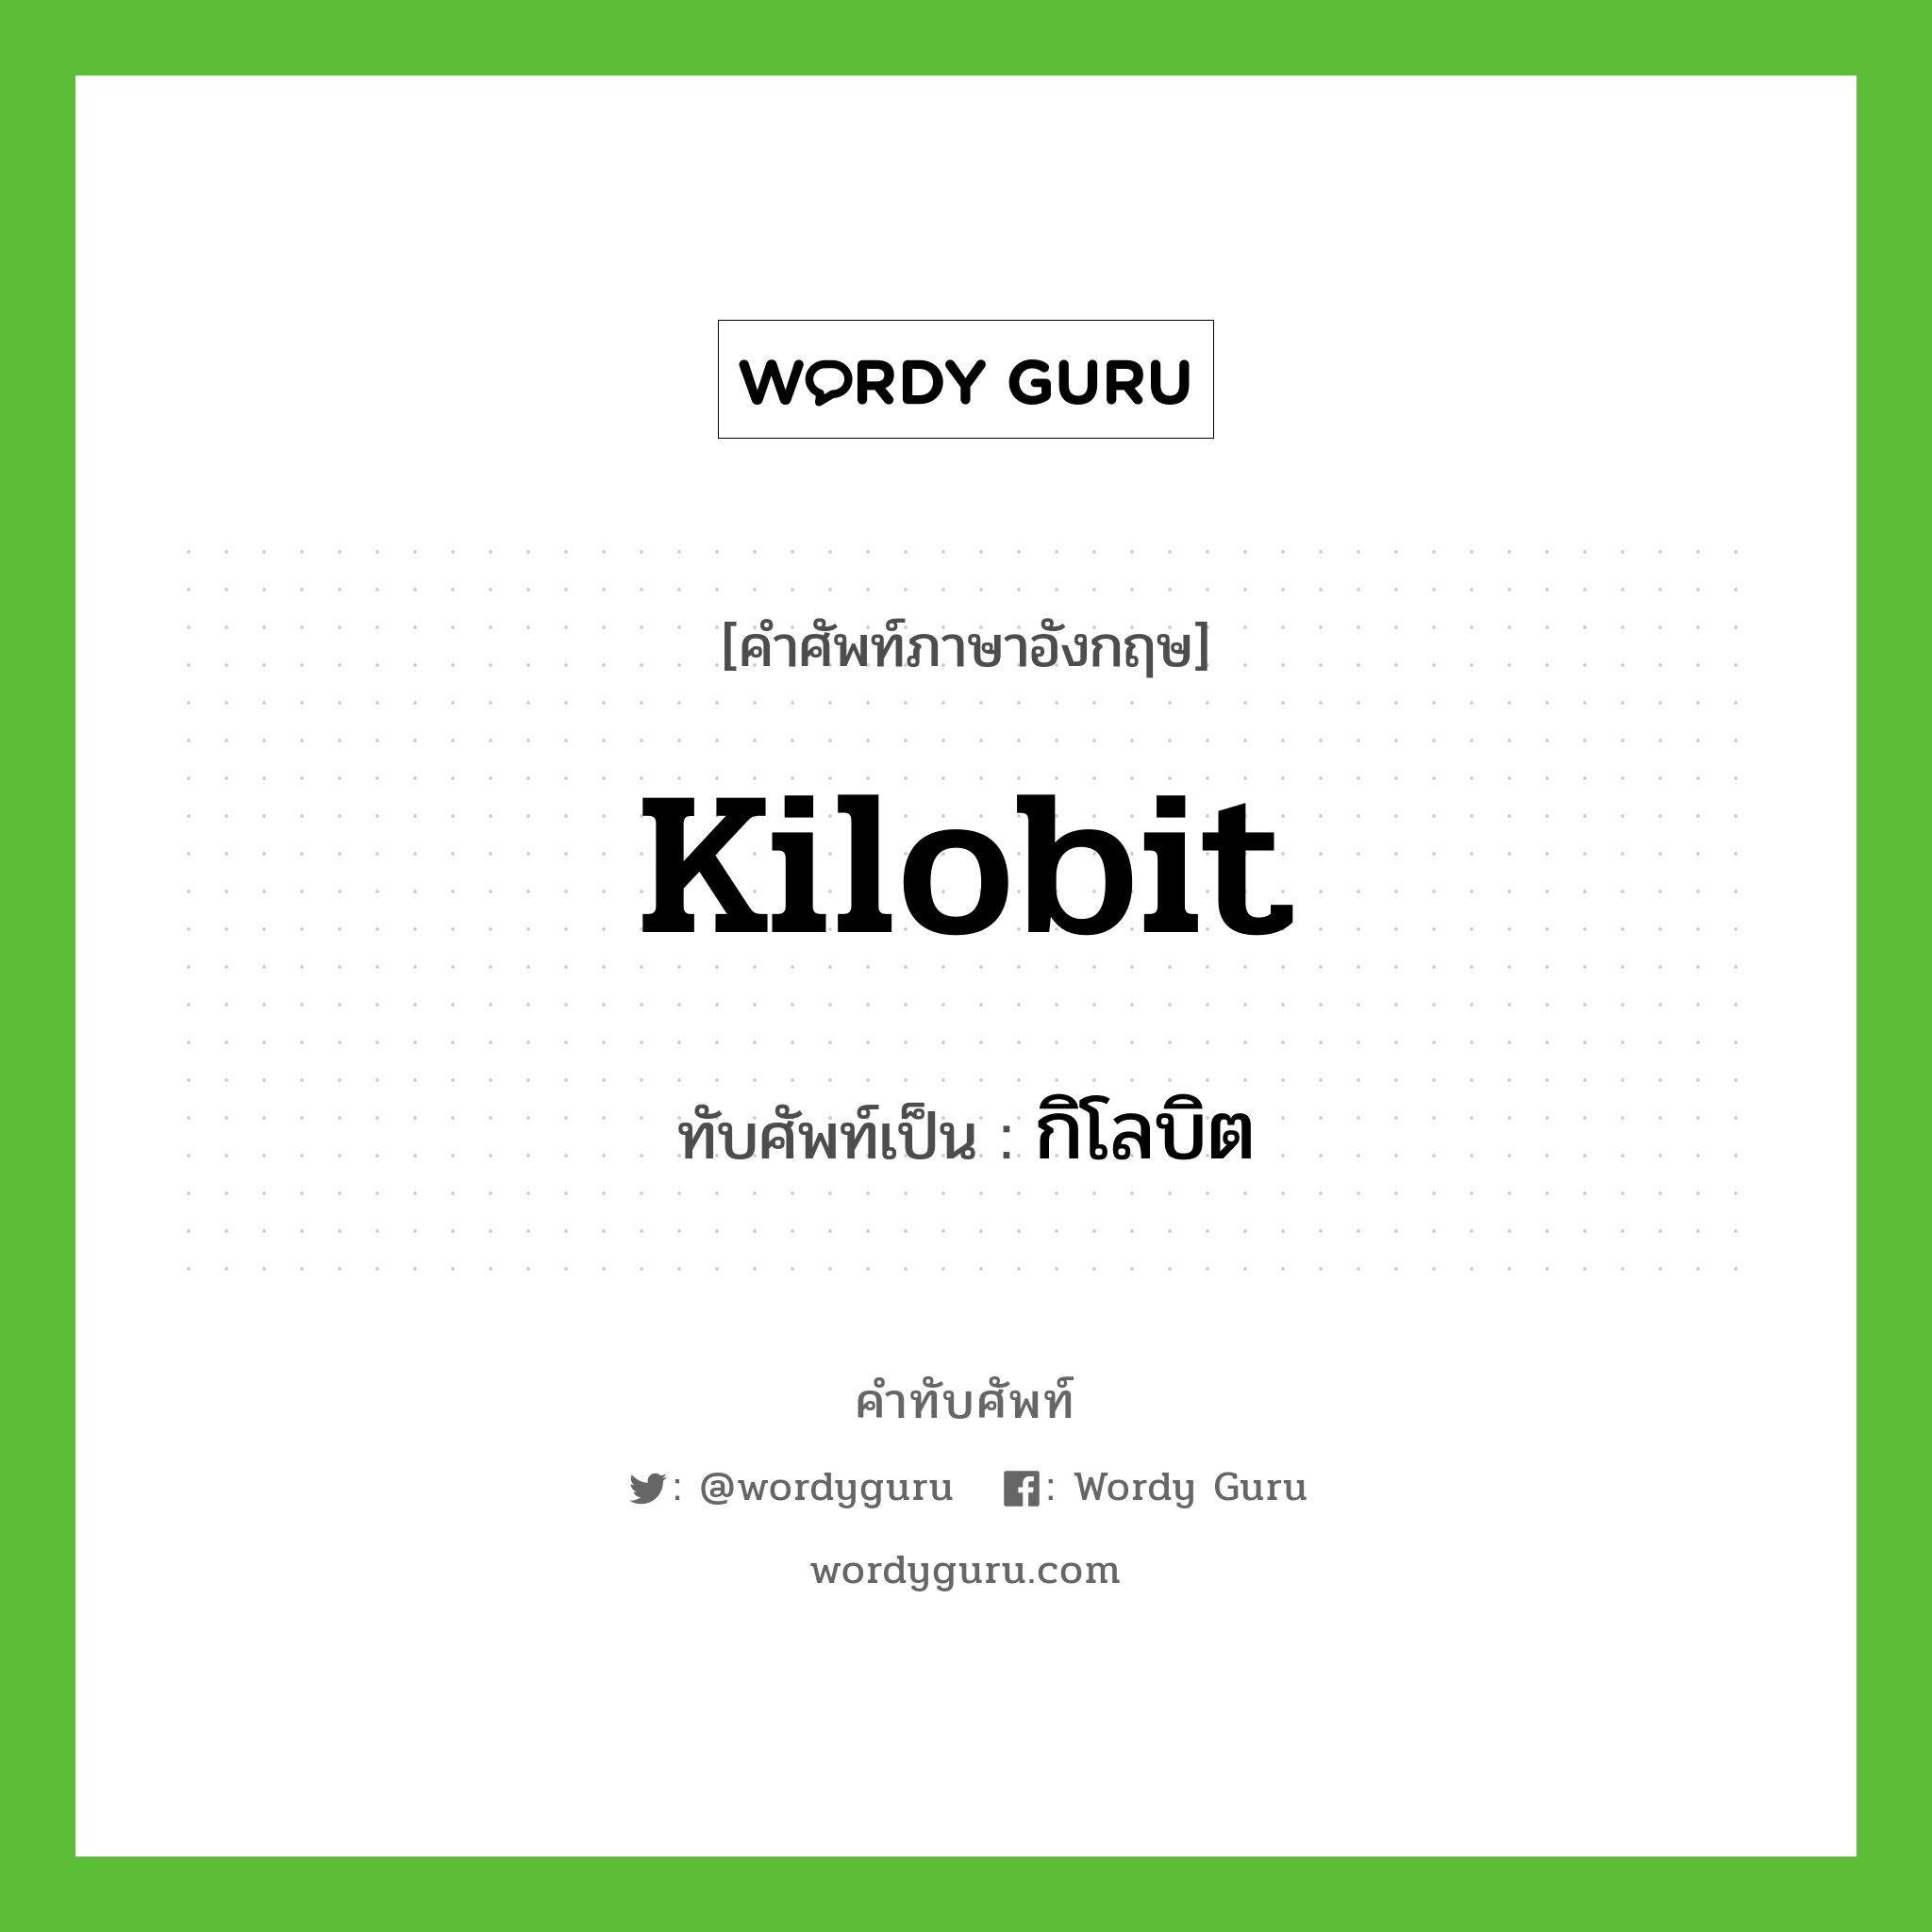 kilobit เขียนเป็นคำไทยว่าอะไร?, คำศัพท์ภาษาอังกฤษ kilobit ทับศัพท์เป็น กิโลบิต